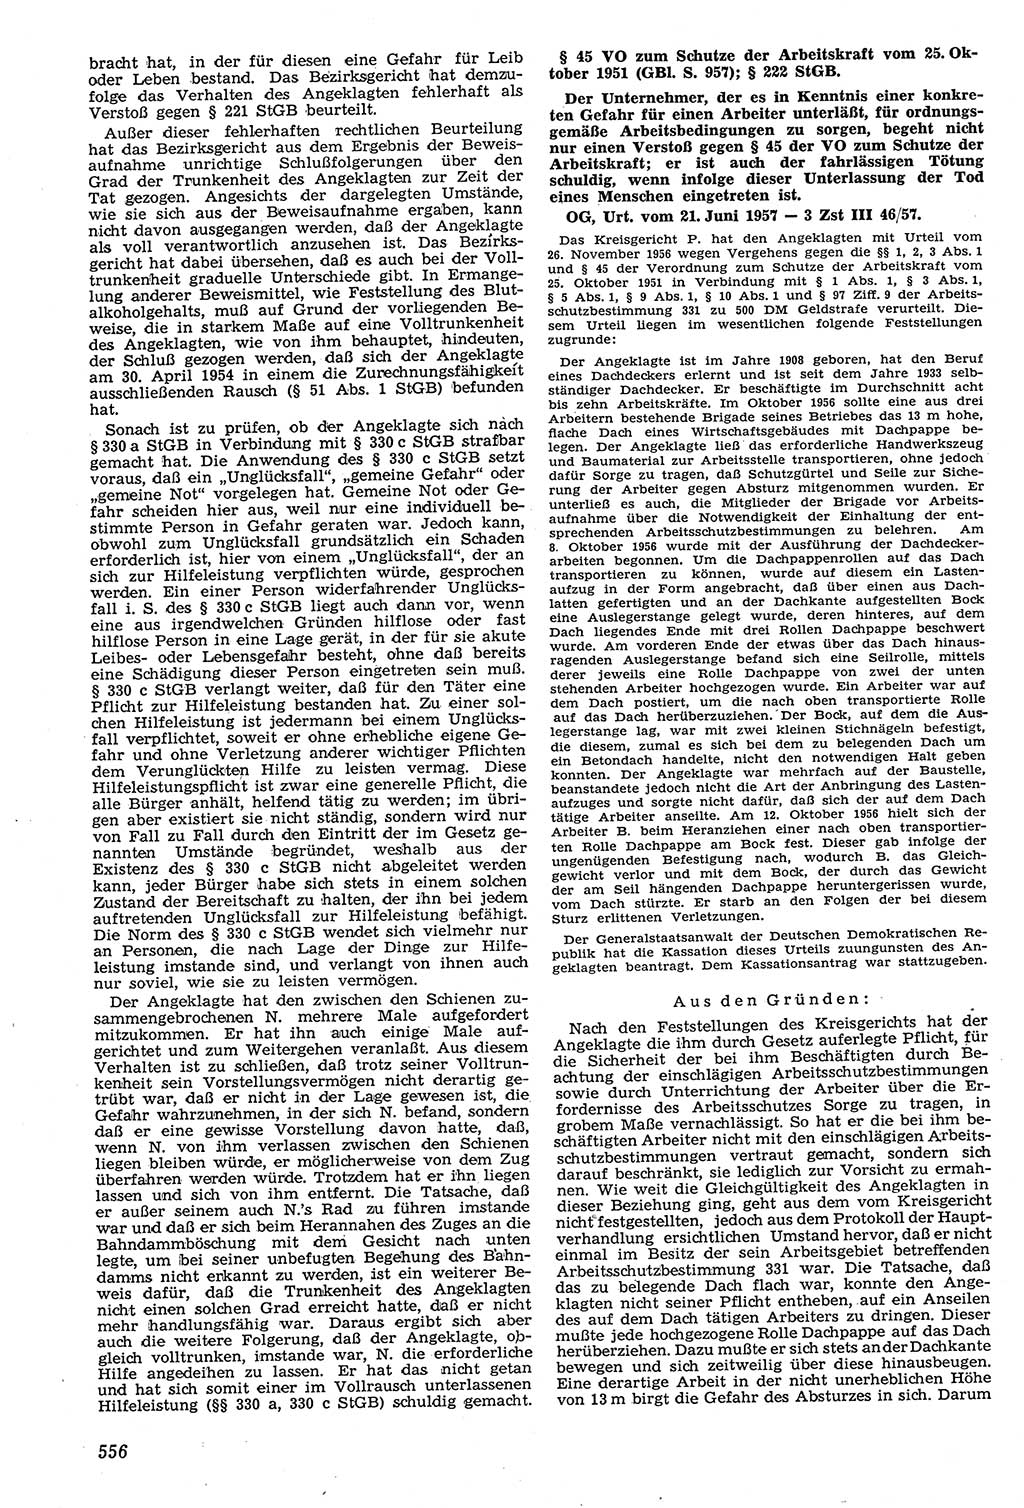 Neue Justiz (NJ), Zeitschrift für Recht und Rechtswissenschaft [Deutsche Demokratische Republik (DDR)], 11. Jahrgang 1957, Seite 556 (NJ DDR 1957, S. 556)